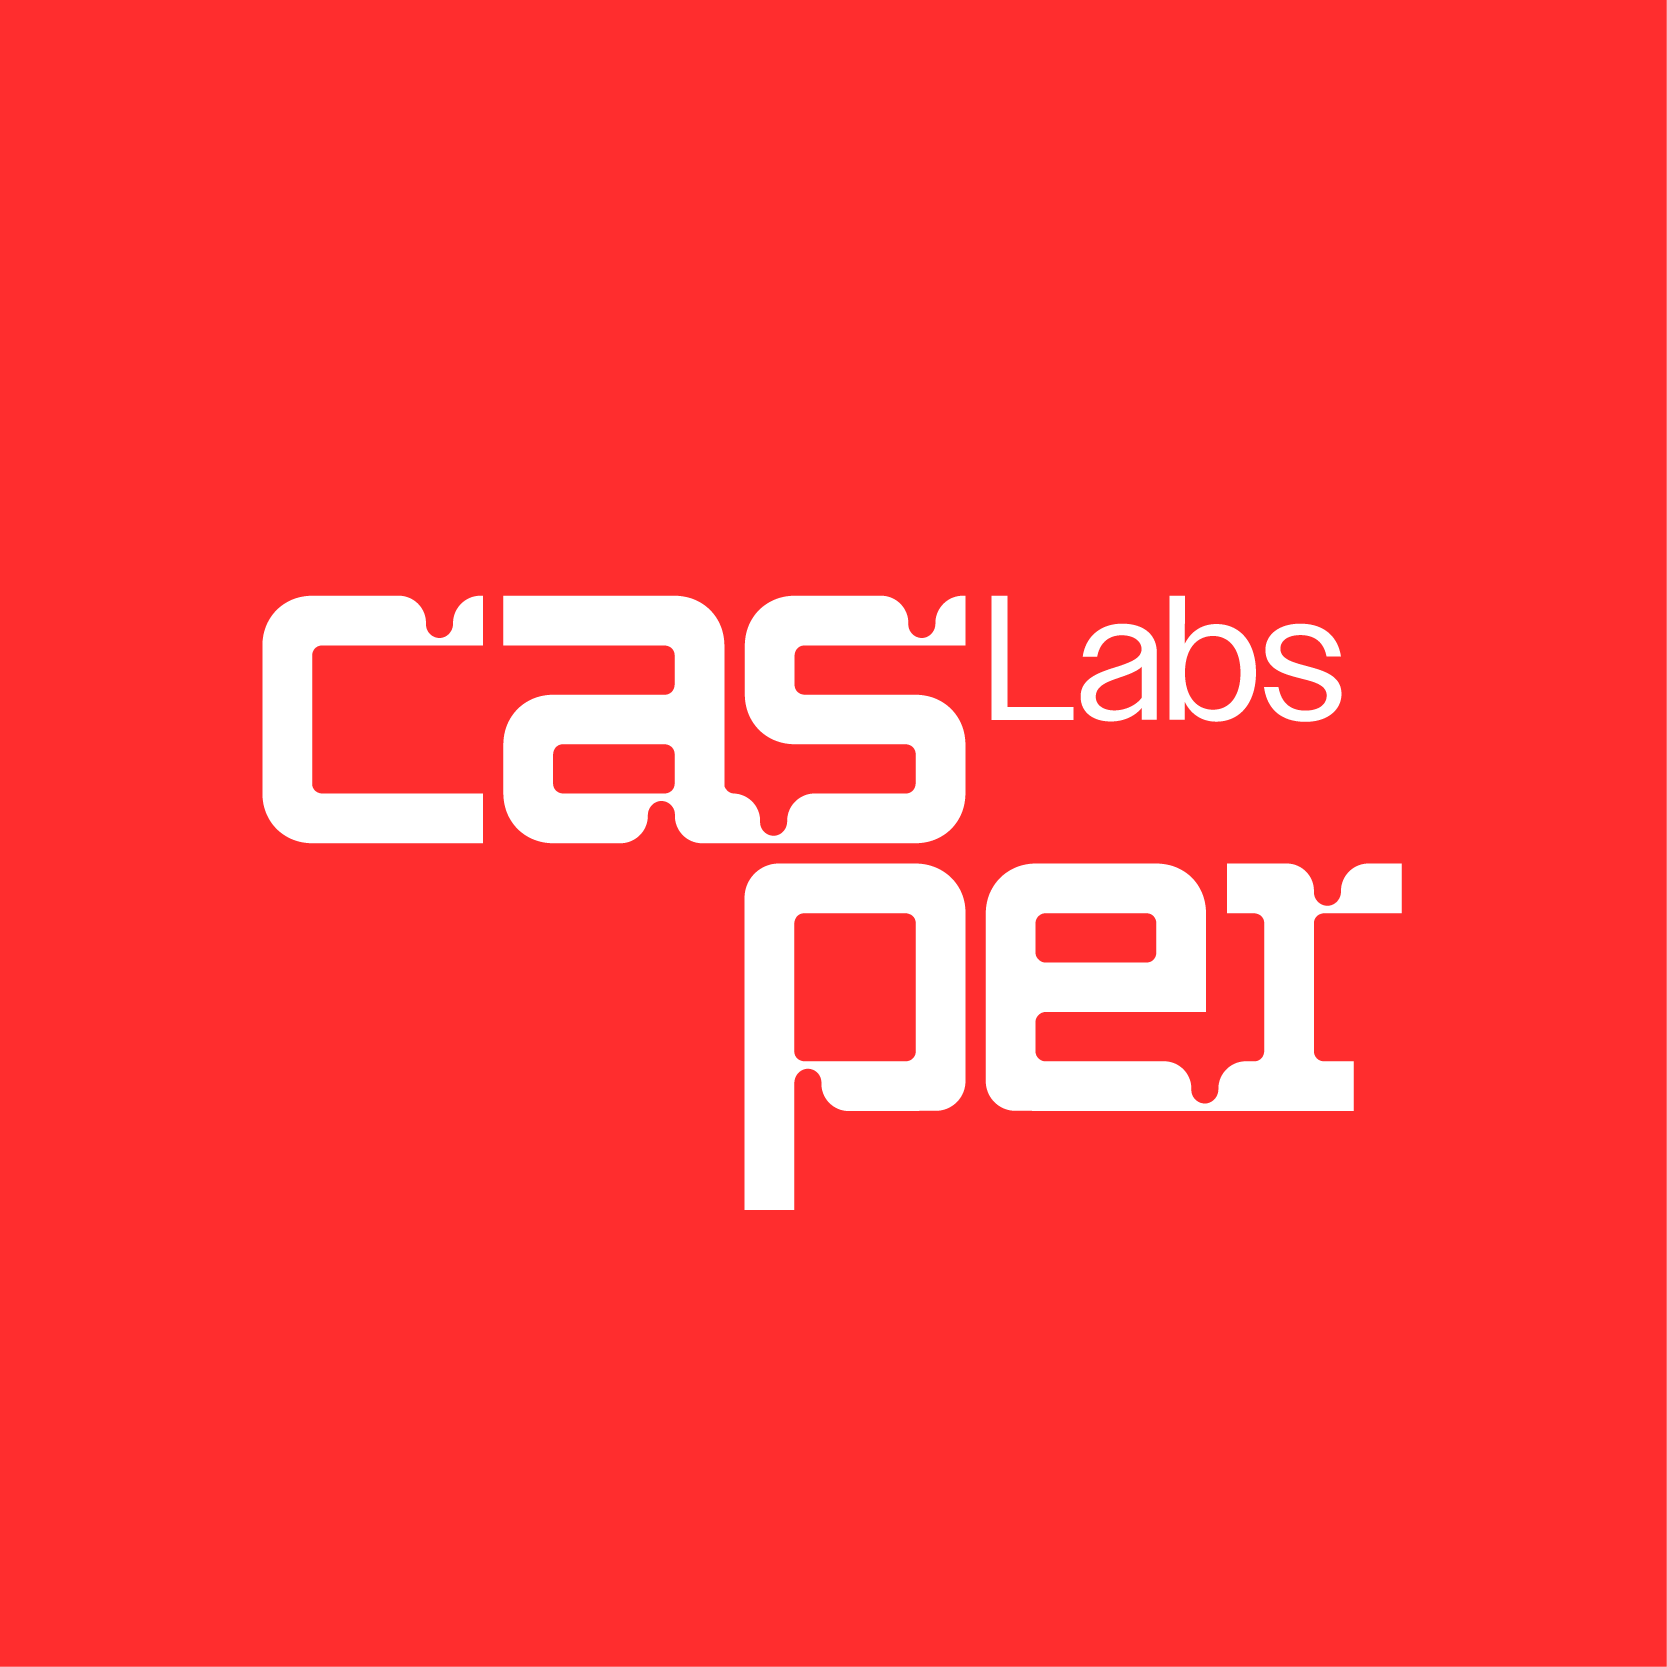 Casper Labs